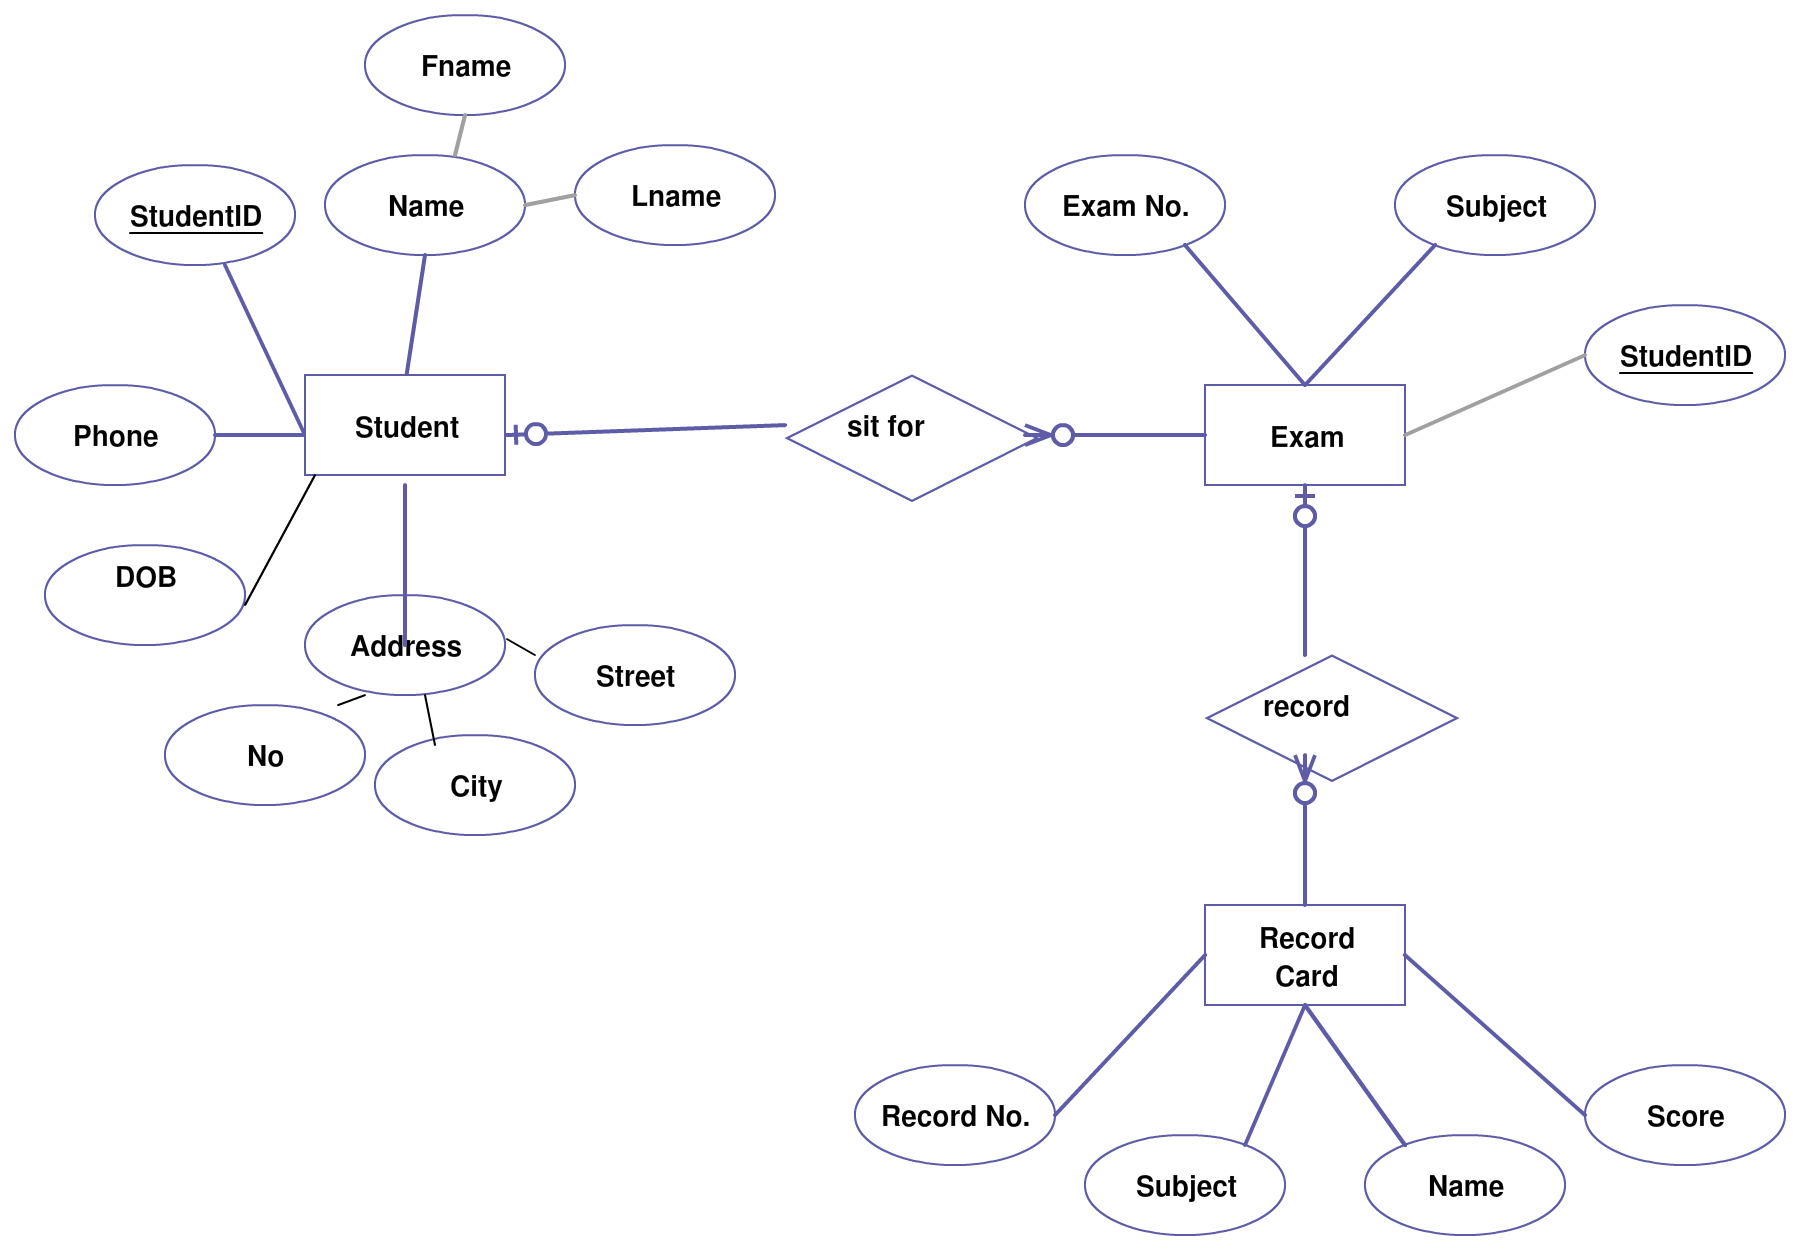 Entity Relationship Diagram (Er Diagram) Of Student Information regarding Er Diagram Examples For Student Information System